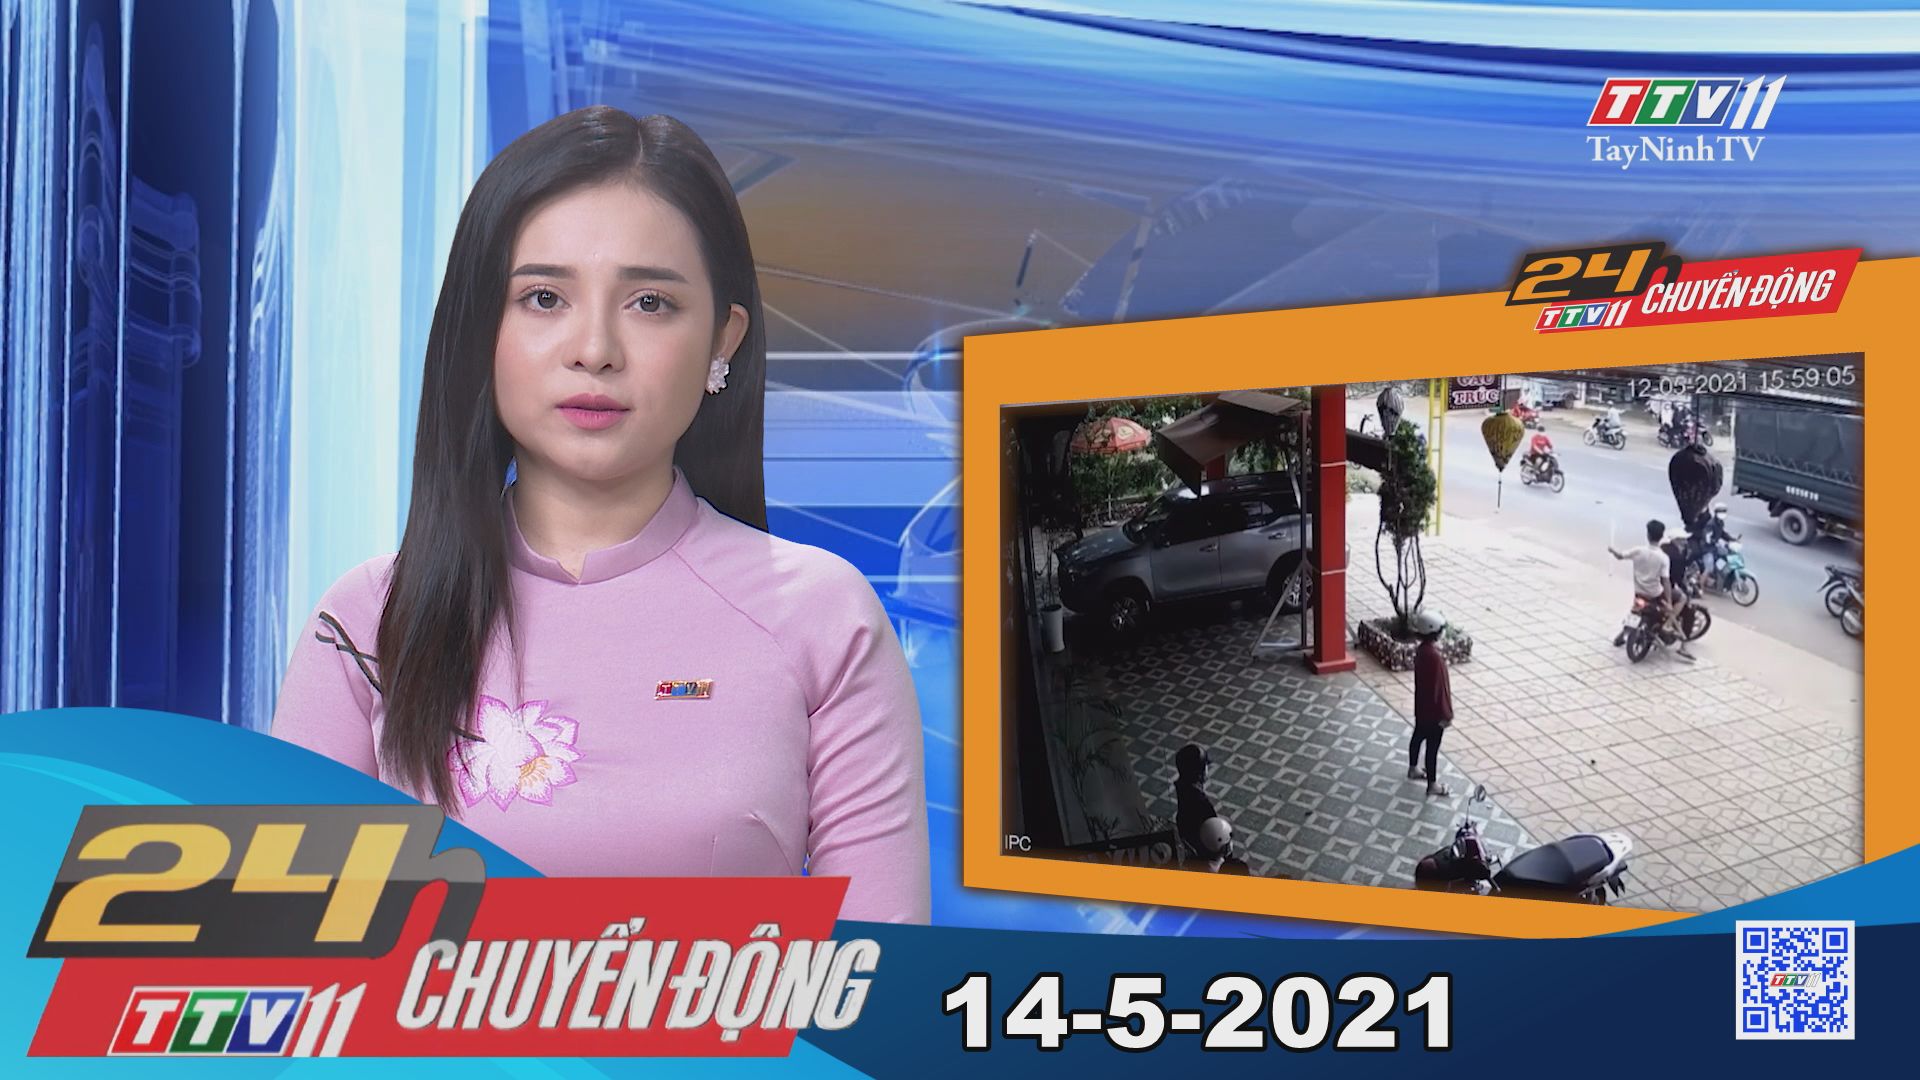 24h Chuyển động 14-5-2021 | Tin tức hôm nay | TayNinhTV